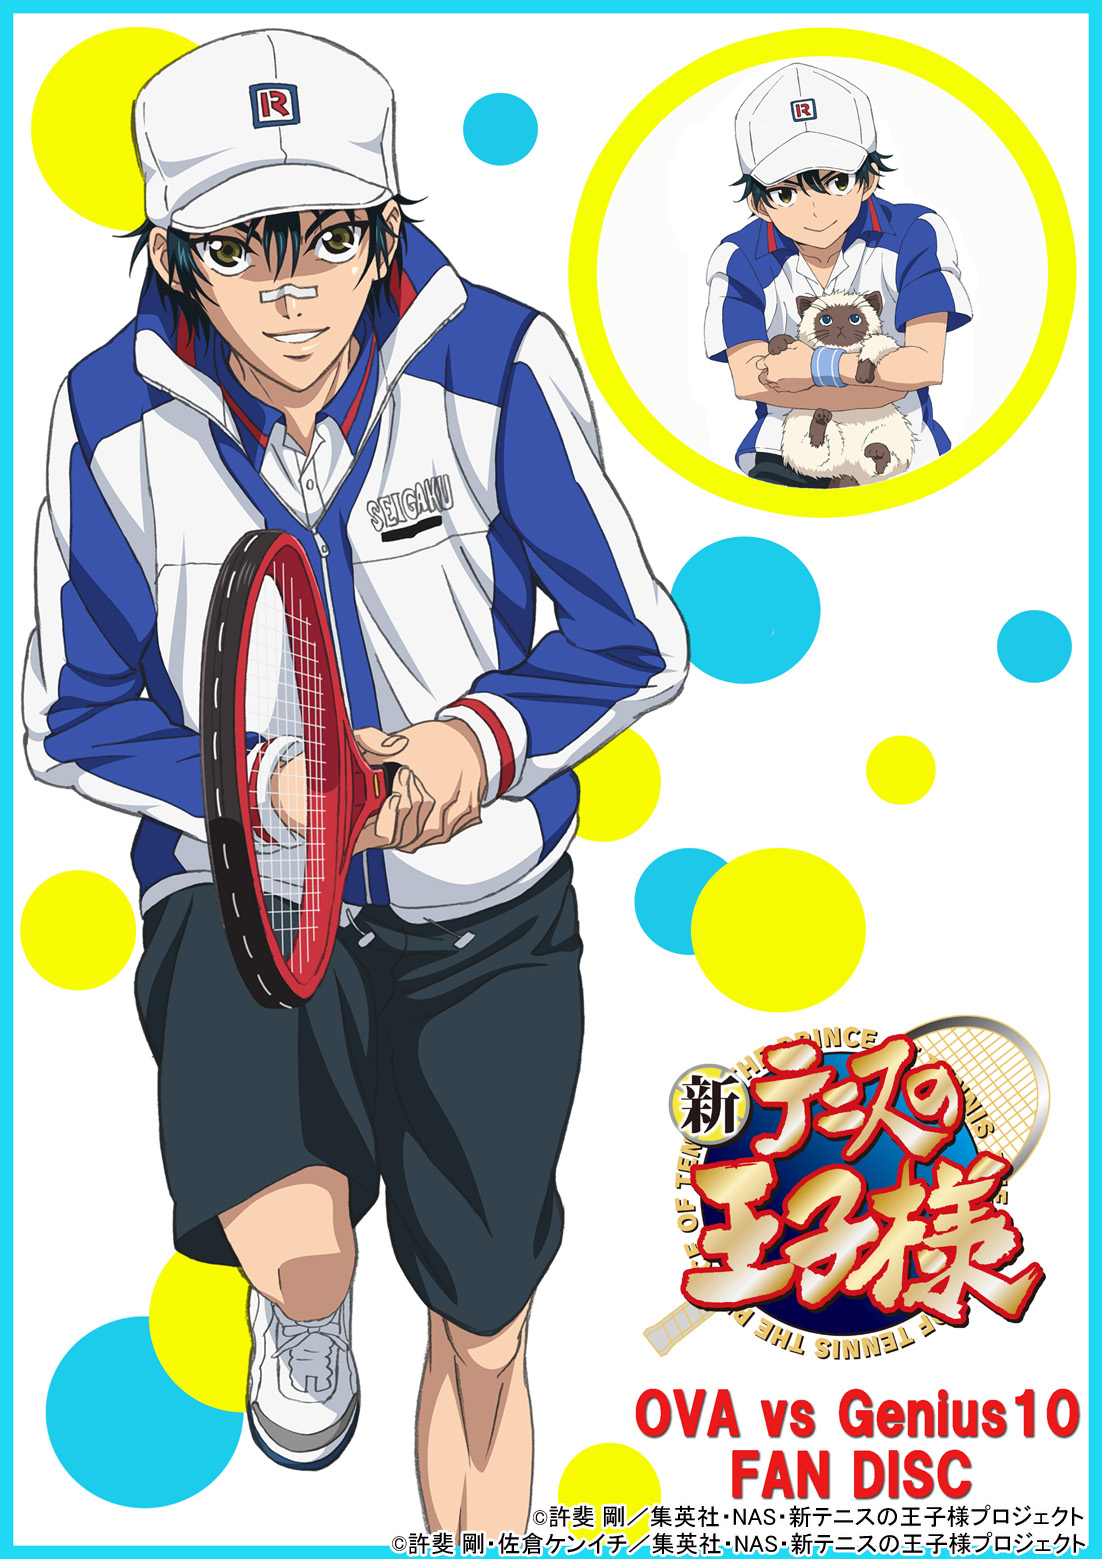 大人気OVAシリーズ初のFAN DISC『新テニスの王子様 OVA vs Genius10 FAN DISC』Blu-ray&DVD発売決定！